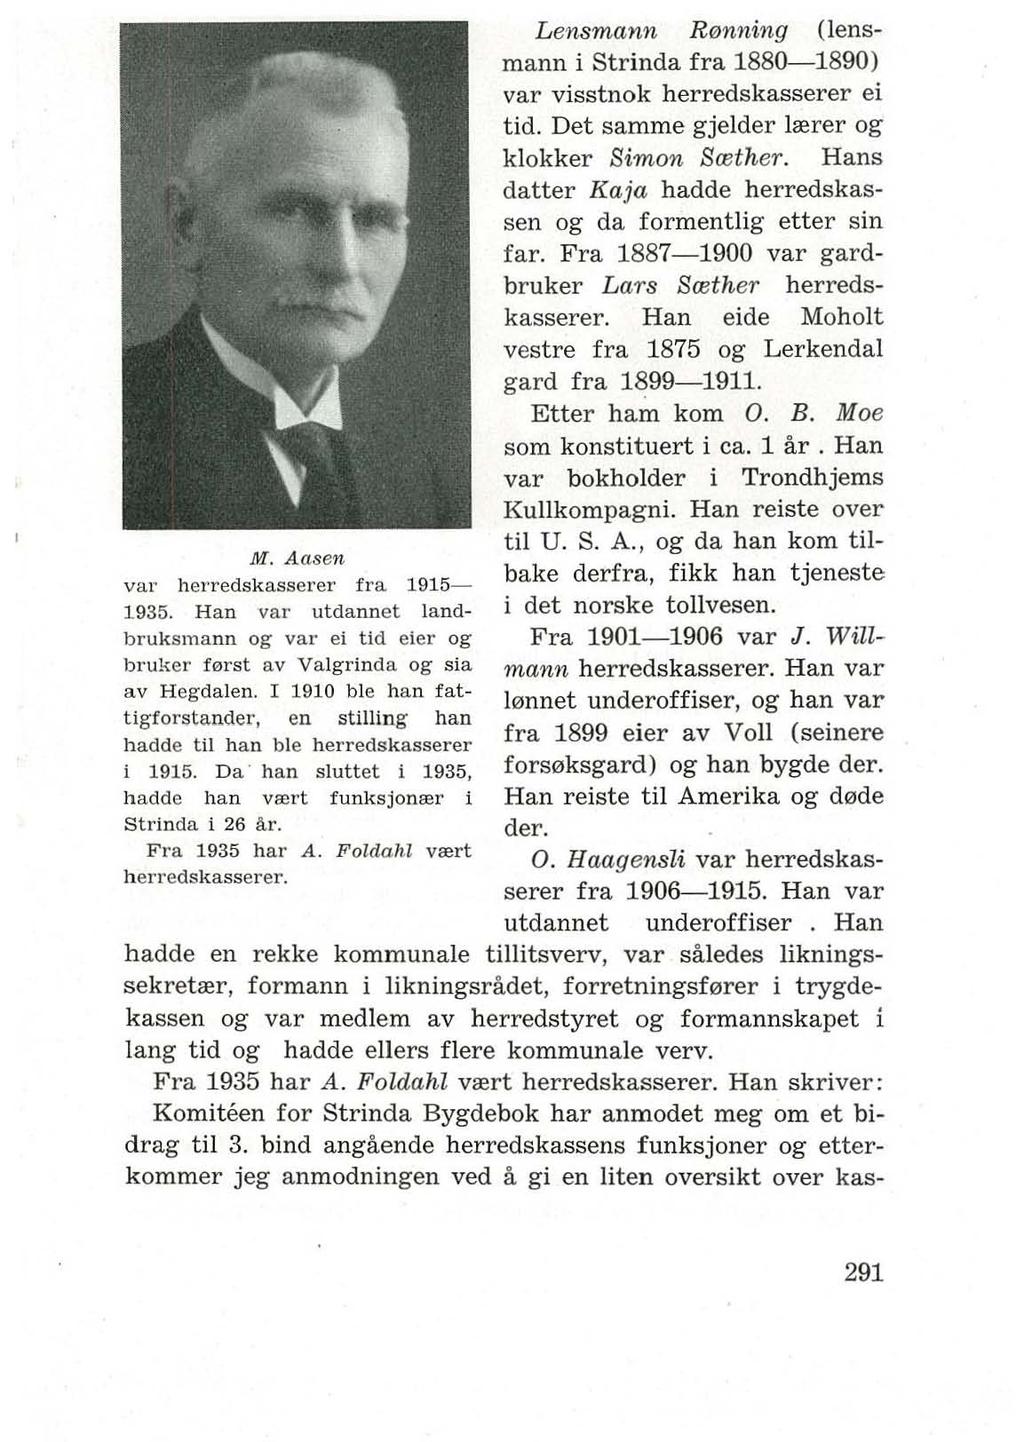 M. Aasen val' herredskasserer fra 1915-1935. Han va l' utdannet landbruksmann og va l' ei tid eler og bruker f0l'st av Valgrinda og sia av Hegdalen.